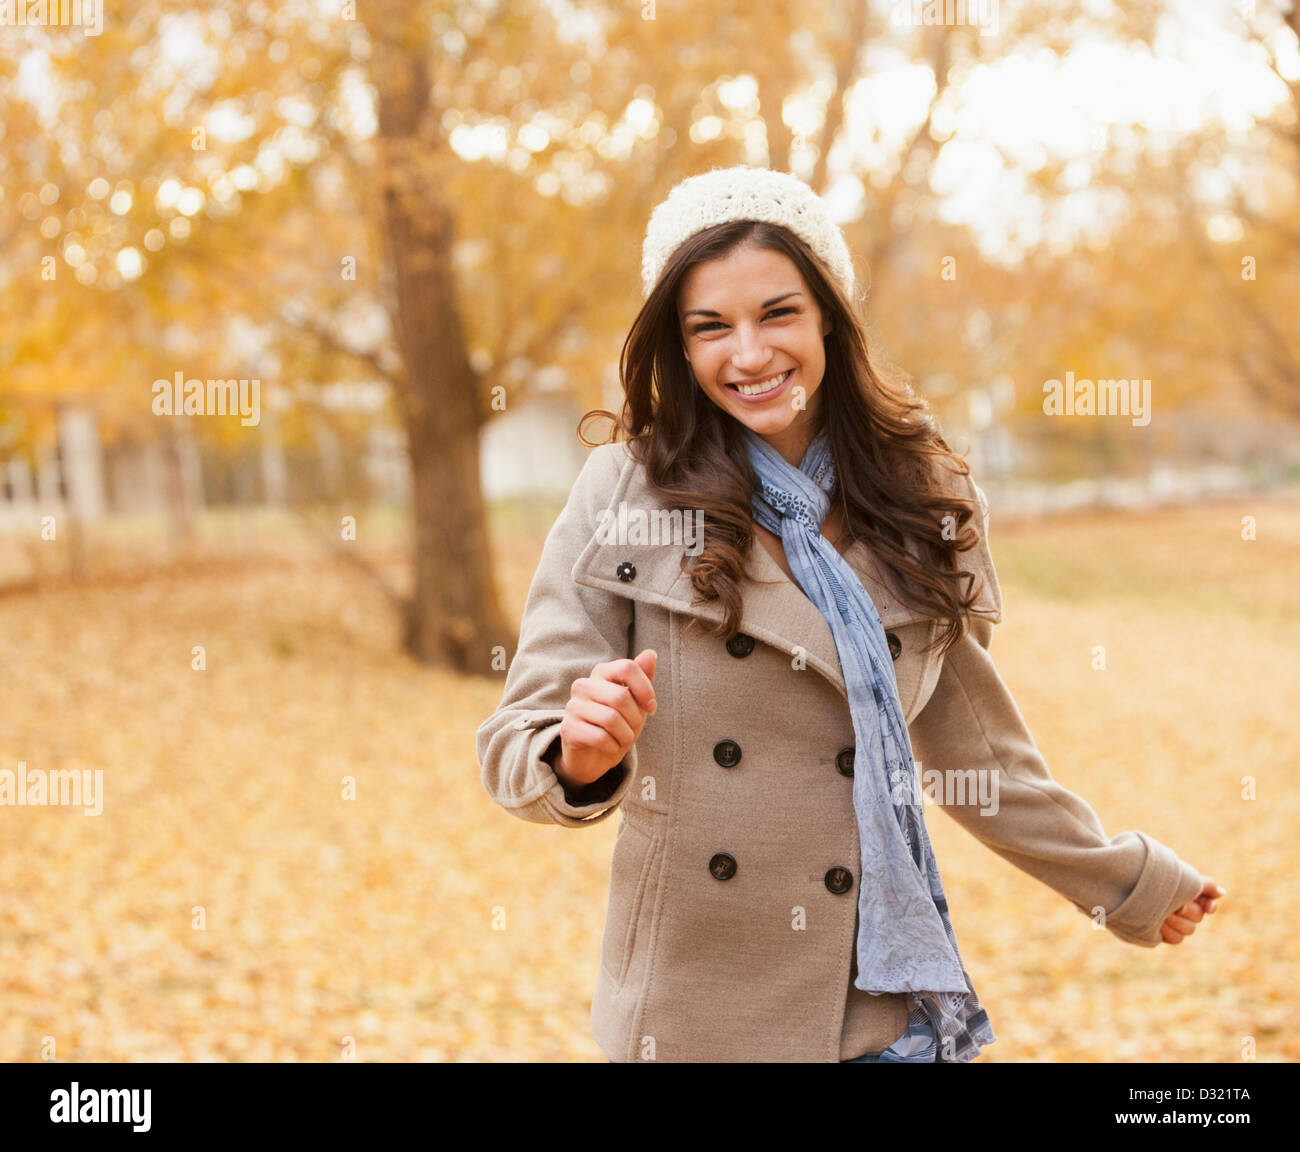 Kaukasische Frau zu Fuß im Herbstlaub Stockfoto